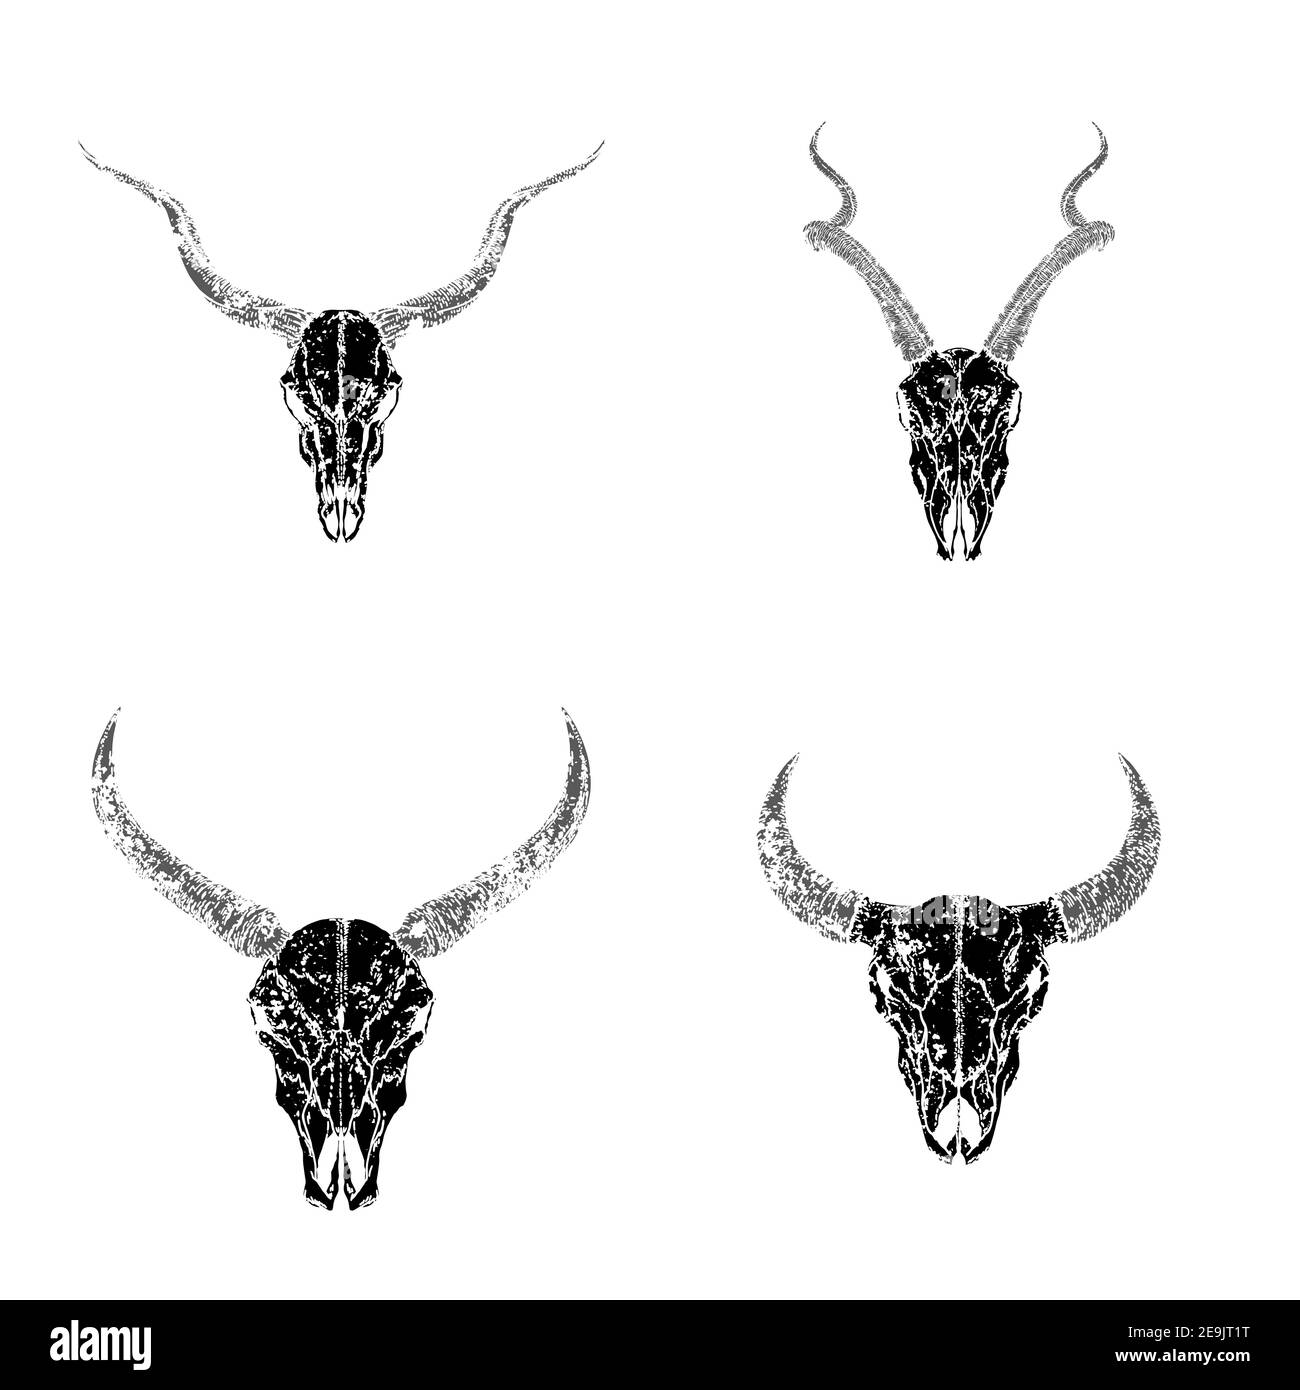 Vektor-Set von handgezeichneten Schädeln von gehörnten Tieren: Antilopen, Stier und Wildbüffel auf weißem Hintergrund. Schwarze Silhouetten mit Grunge-Struktur. Für Jo Stock Vektor